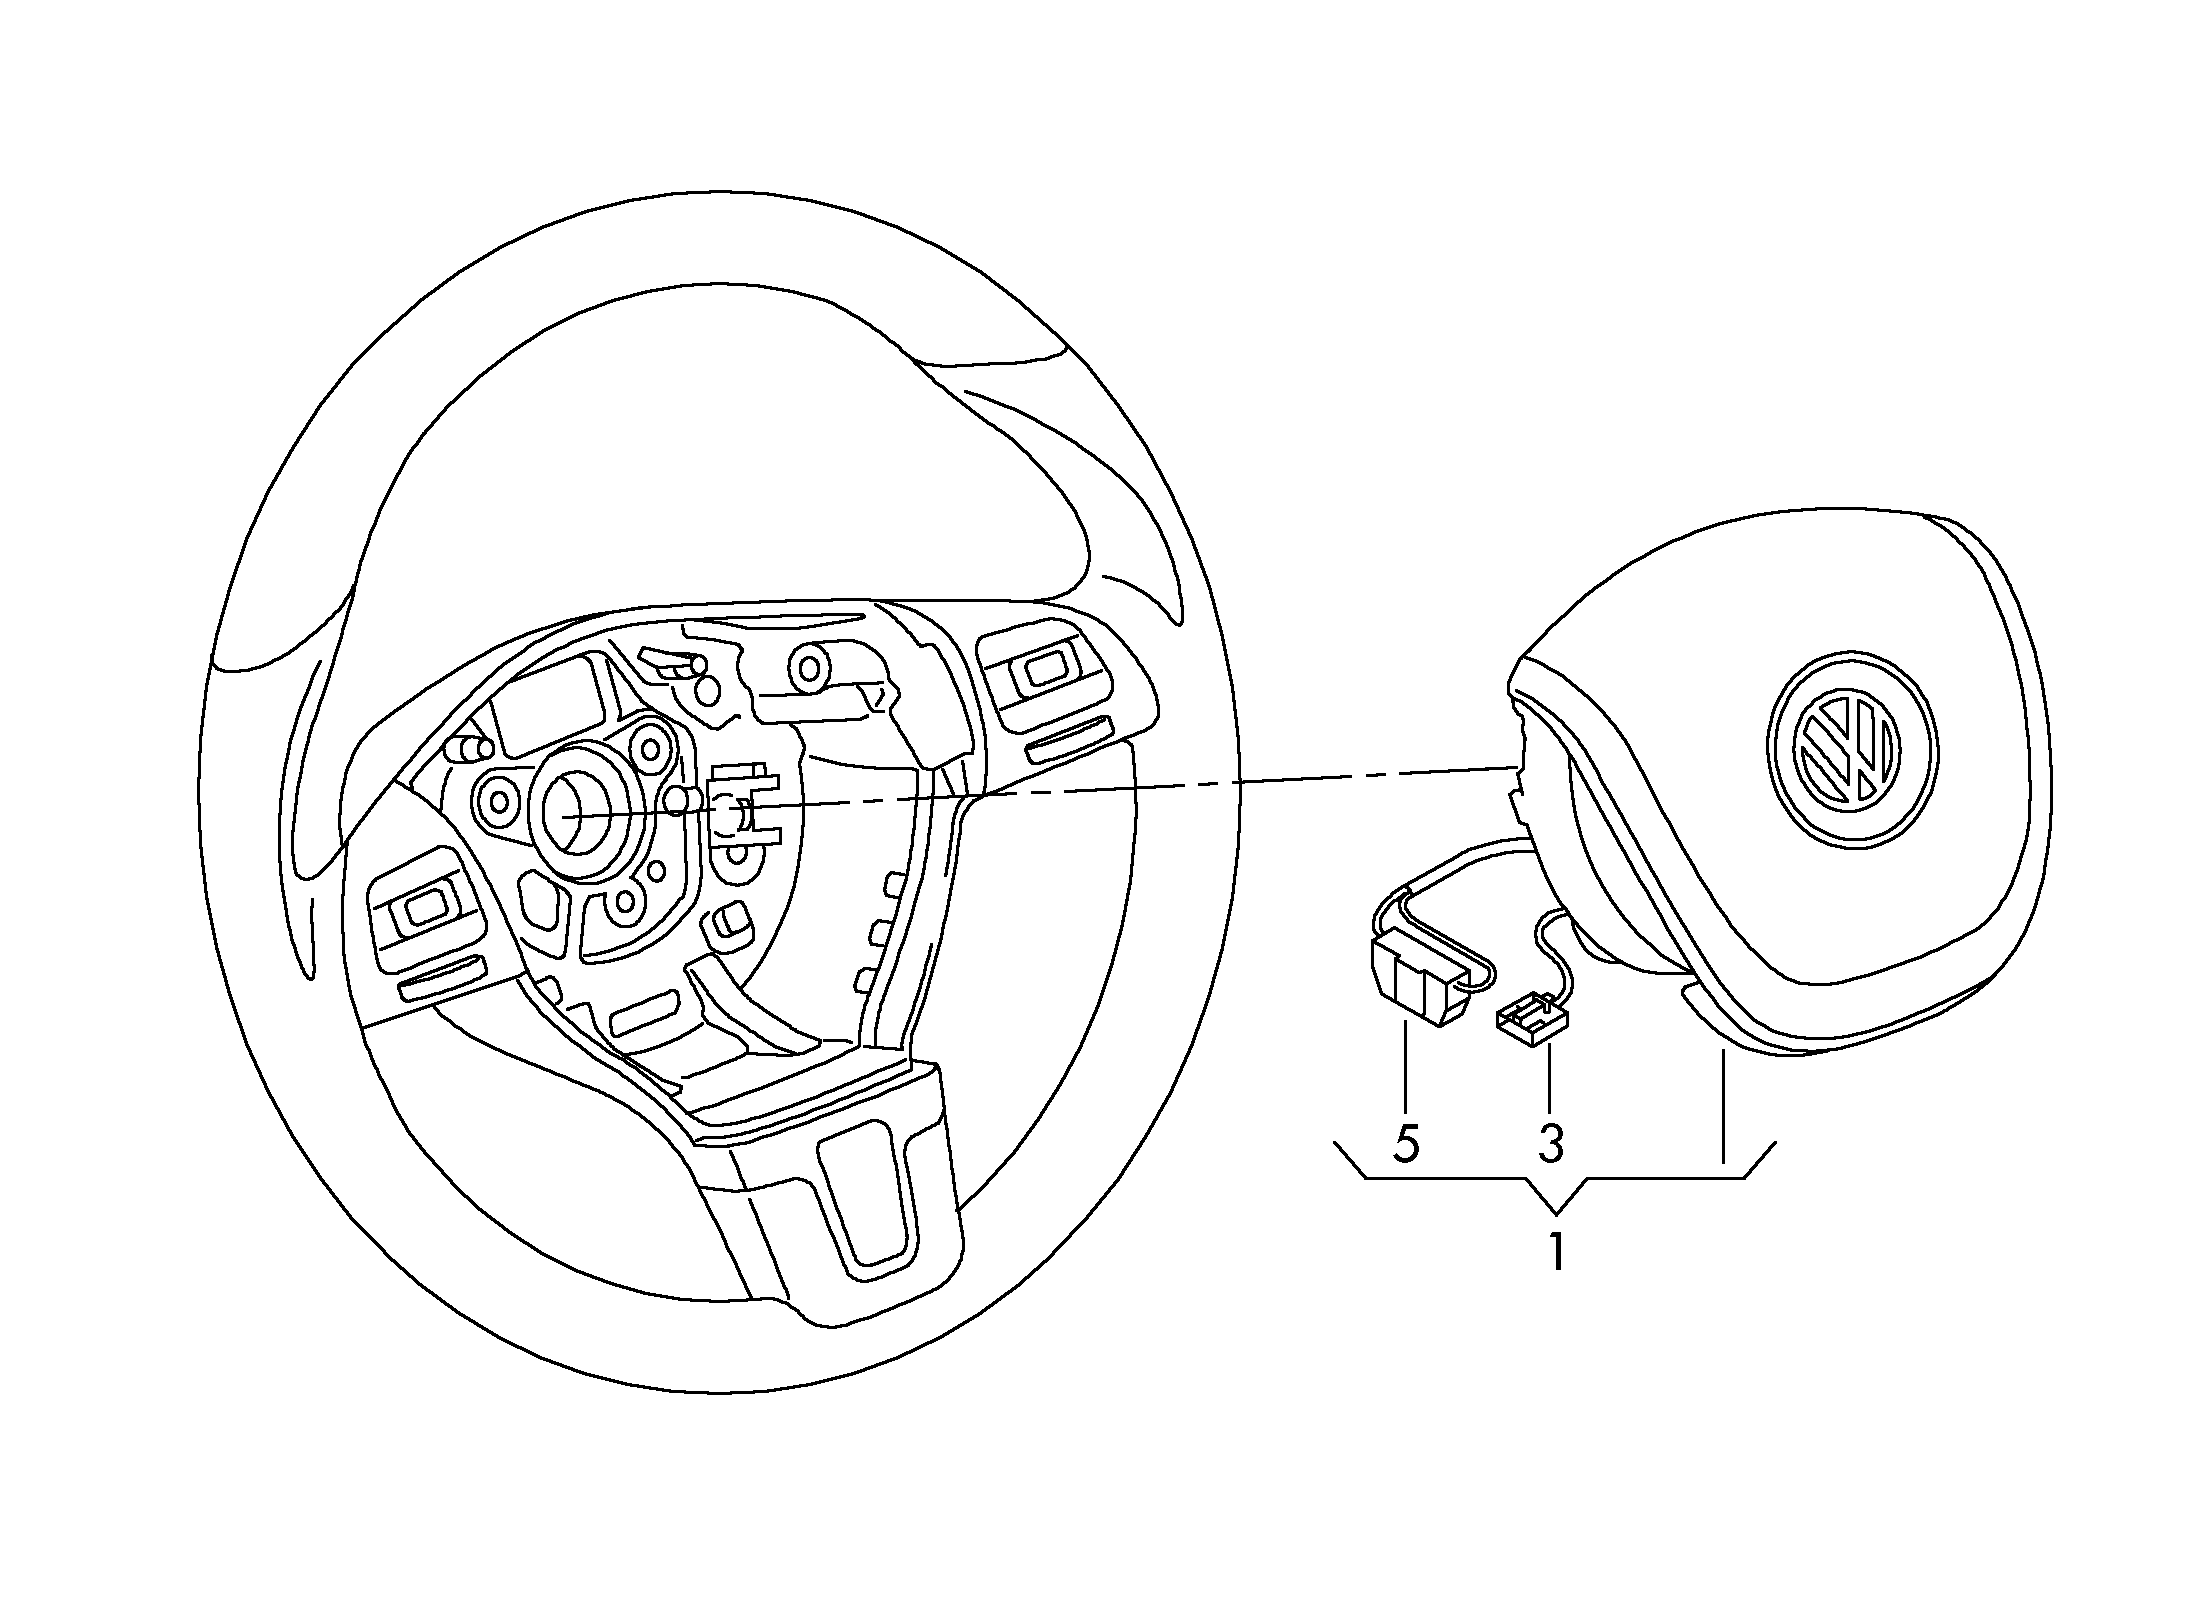 module de sac gonflable; (cote conducteur) - Touareg(TOUA)  